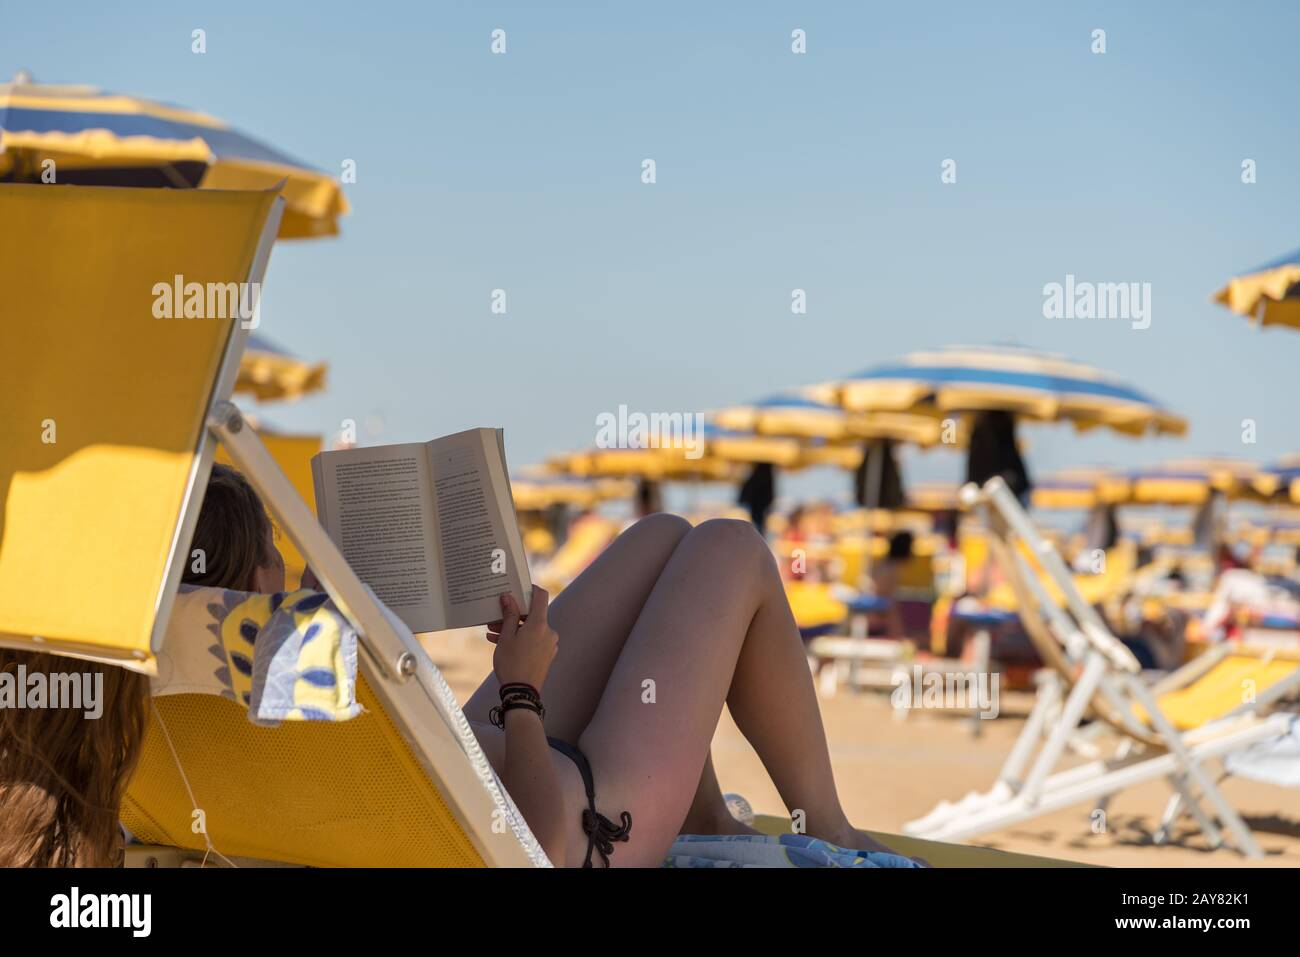 Sonnenliege badetuch -Fotos und -Bildmaterial in hoher Auflösung – Alamy